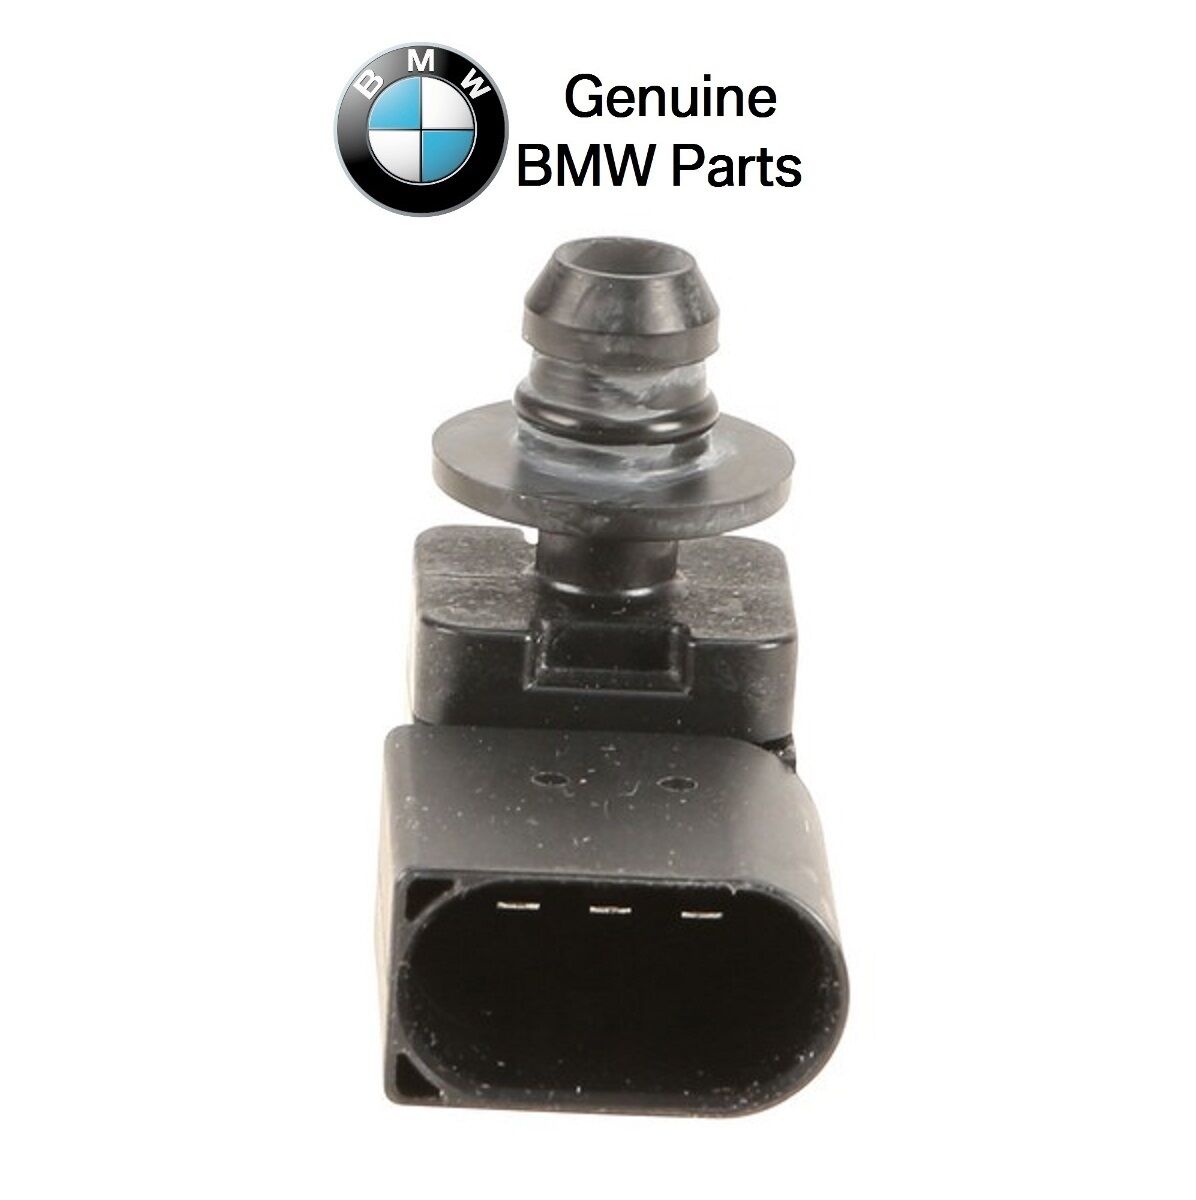 For BMW E90 E70 X5 335d 09-13 Intake Manifold Sensor Genuine 13 62 7 792 260